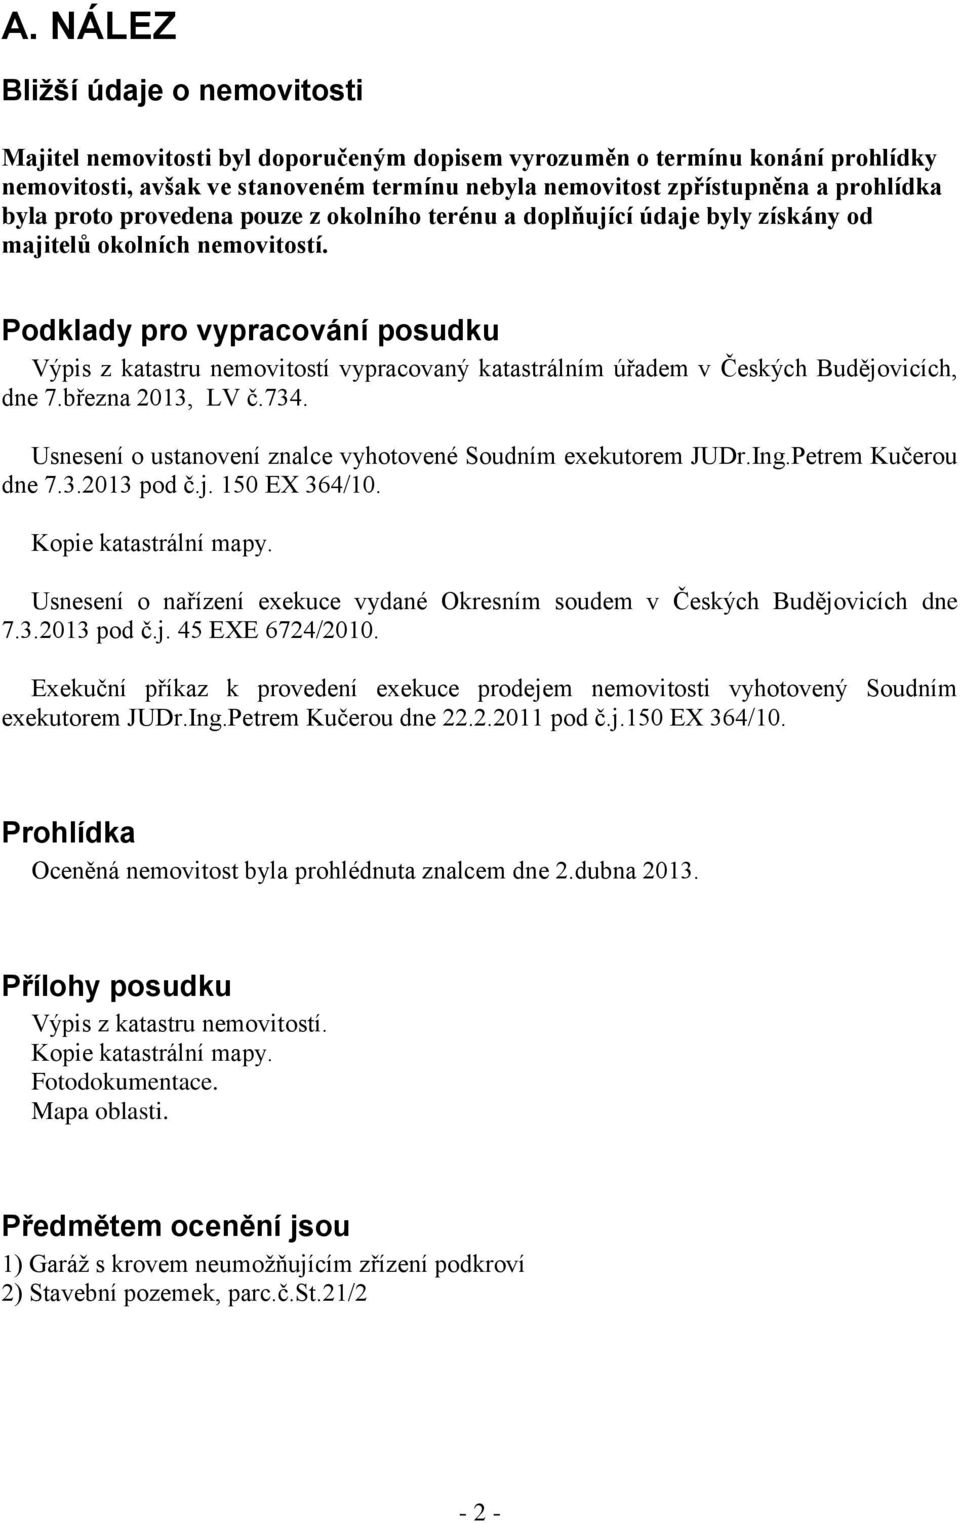 Podklady pro vypracování posudku Výpis z katastru nemovitostí vypracovaný katastrálním úřadem v Českých Budějovicích, dne 7.března 2013, LV č.734.